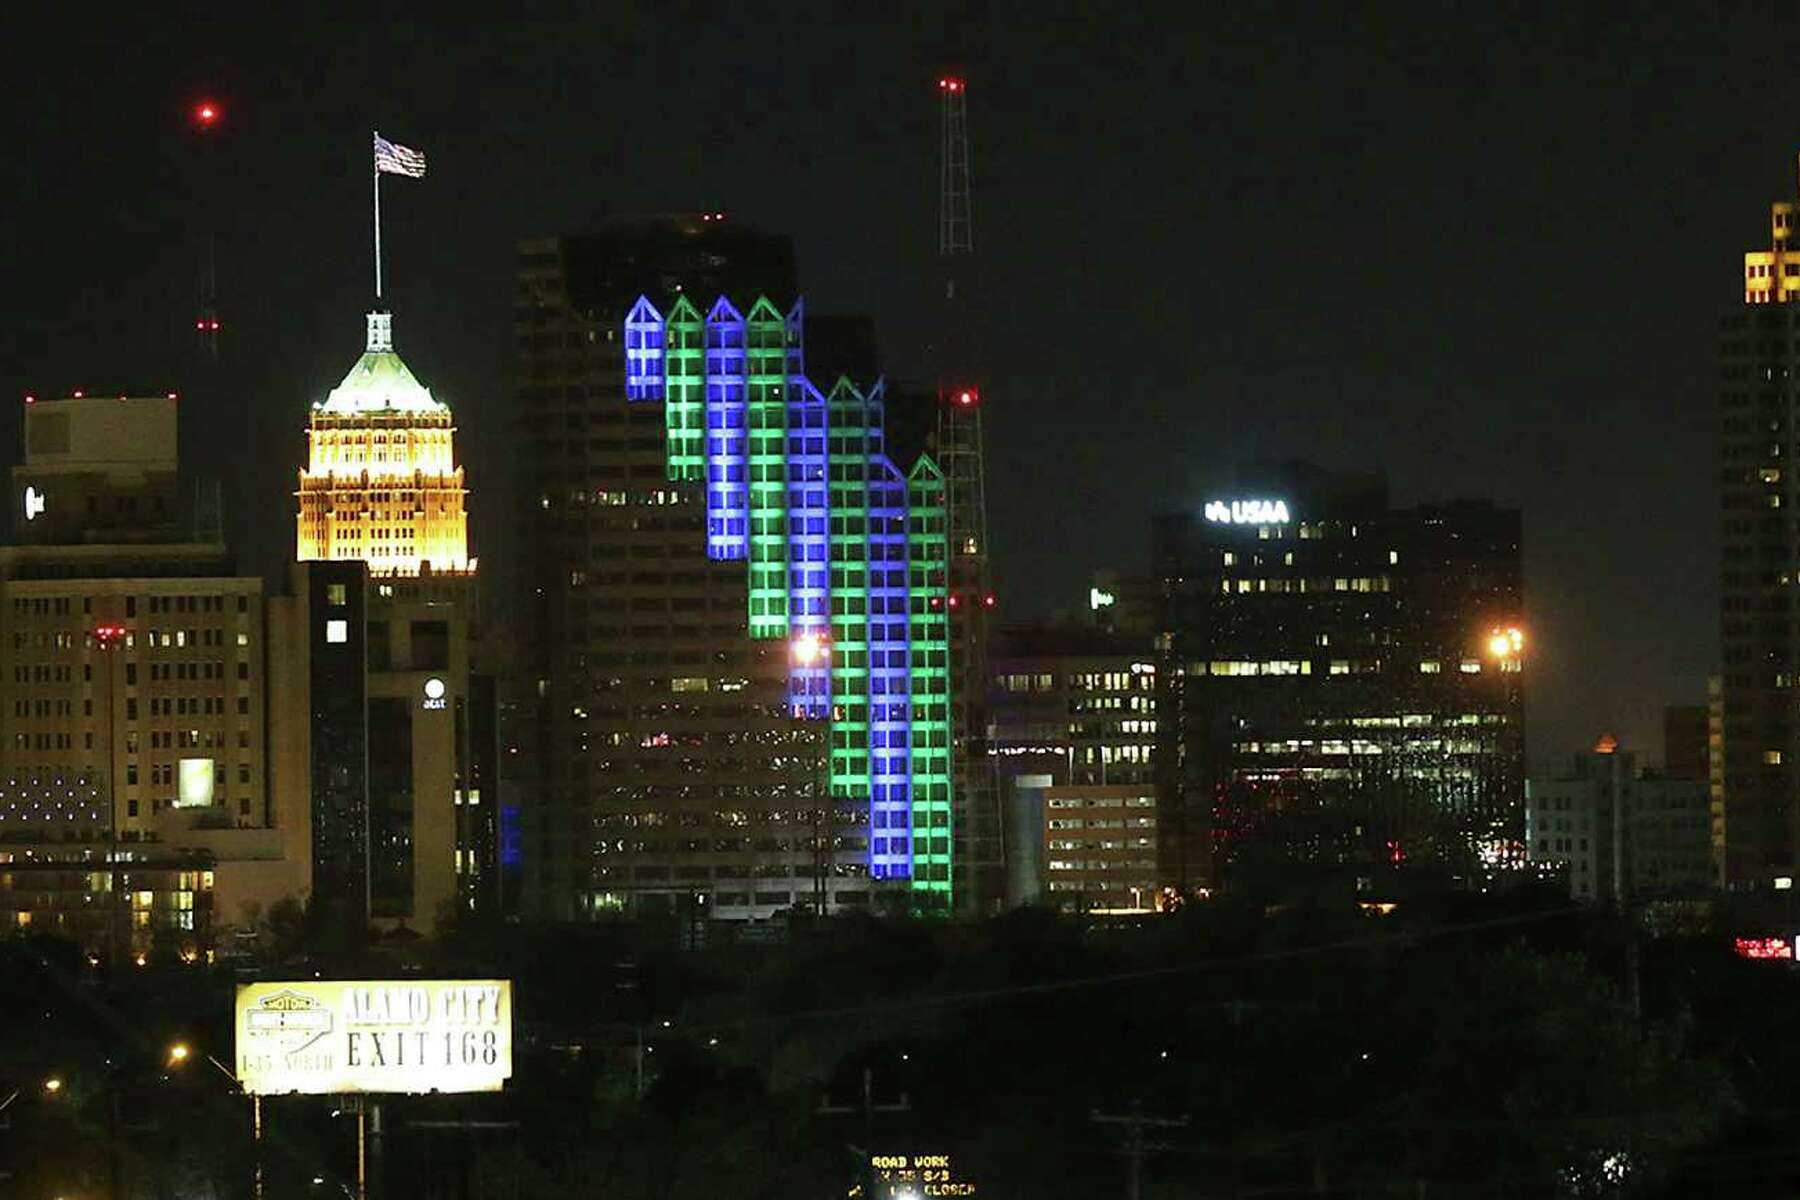 træthed betalingsmiddel Medicinsk San Antonio artist's 'Kinetic Skyline' lights up downtown building Thursday